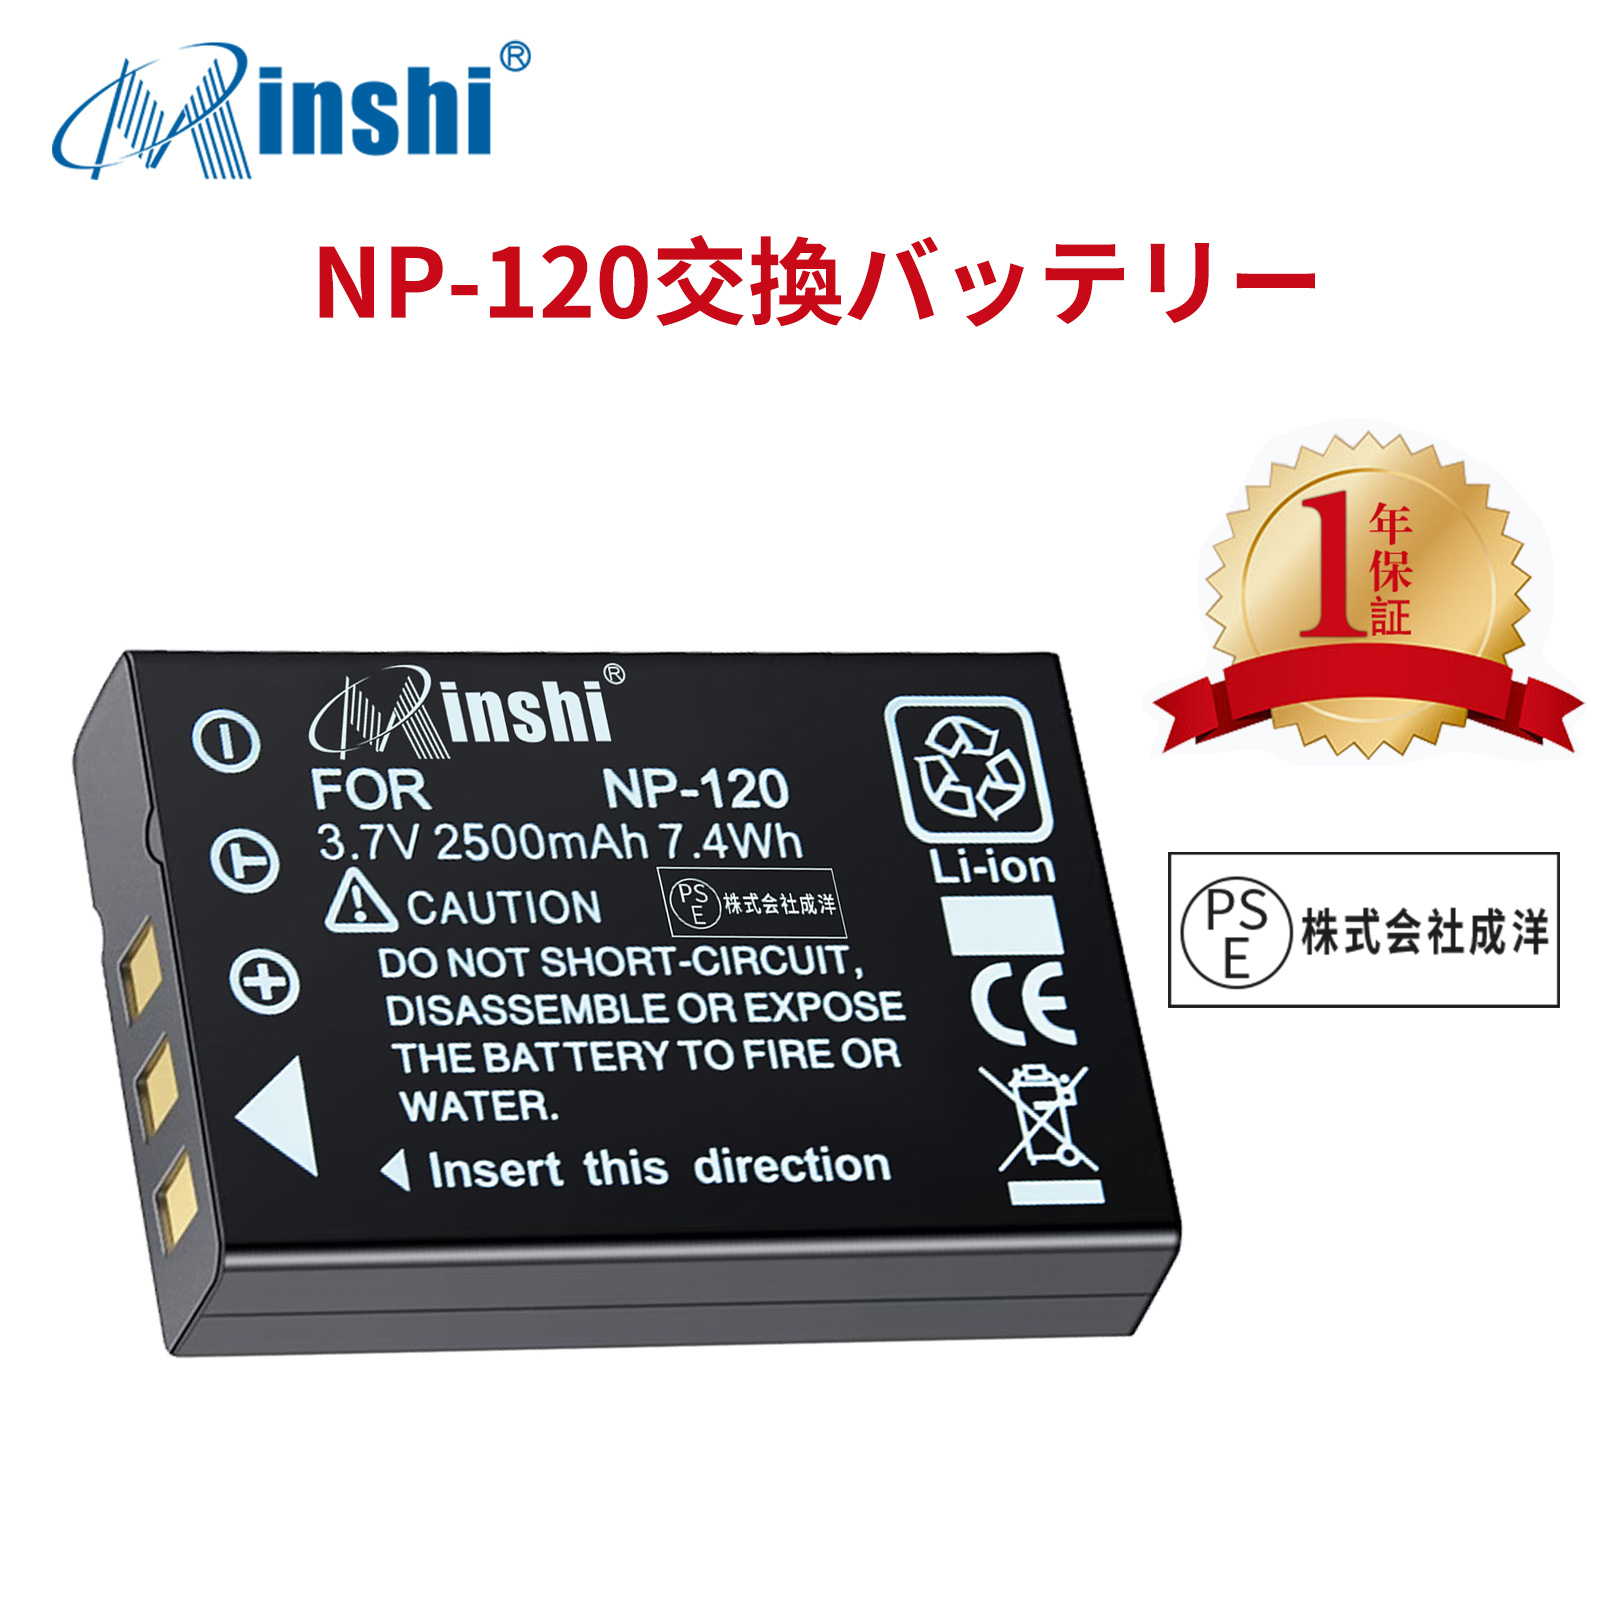 【1年保証】minshi FUJIFILM Caplio G3 model S DB-43 【2500mAh 3.7V】 高品質交換用バッテリー